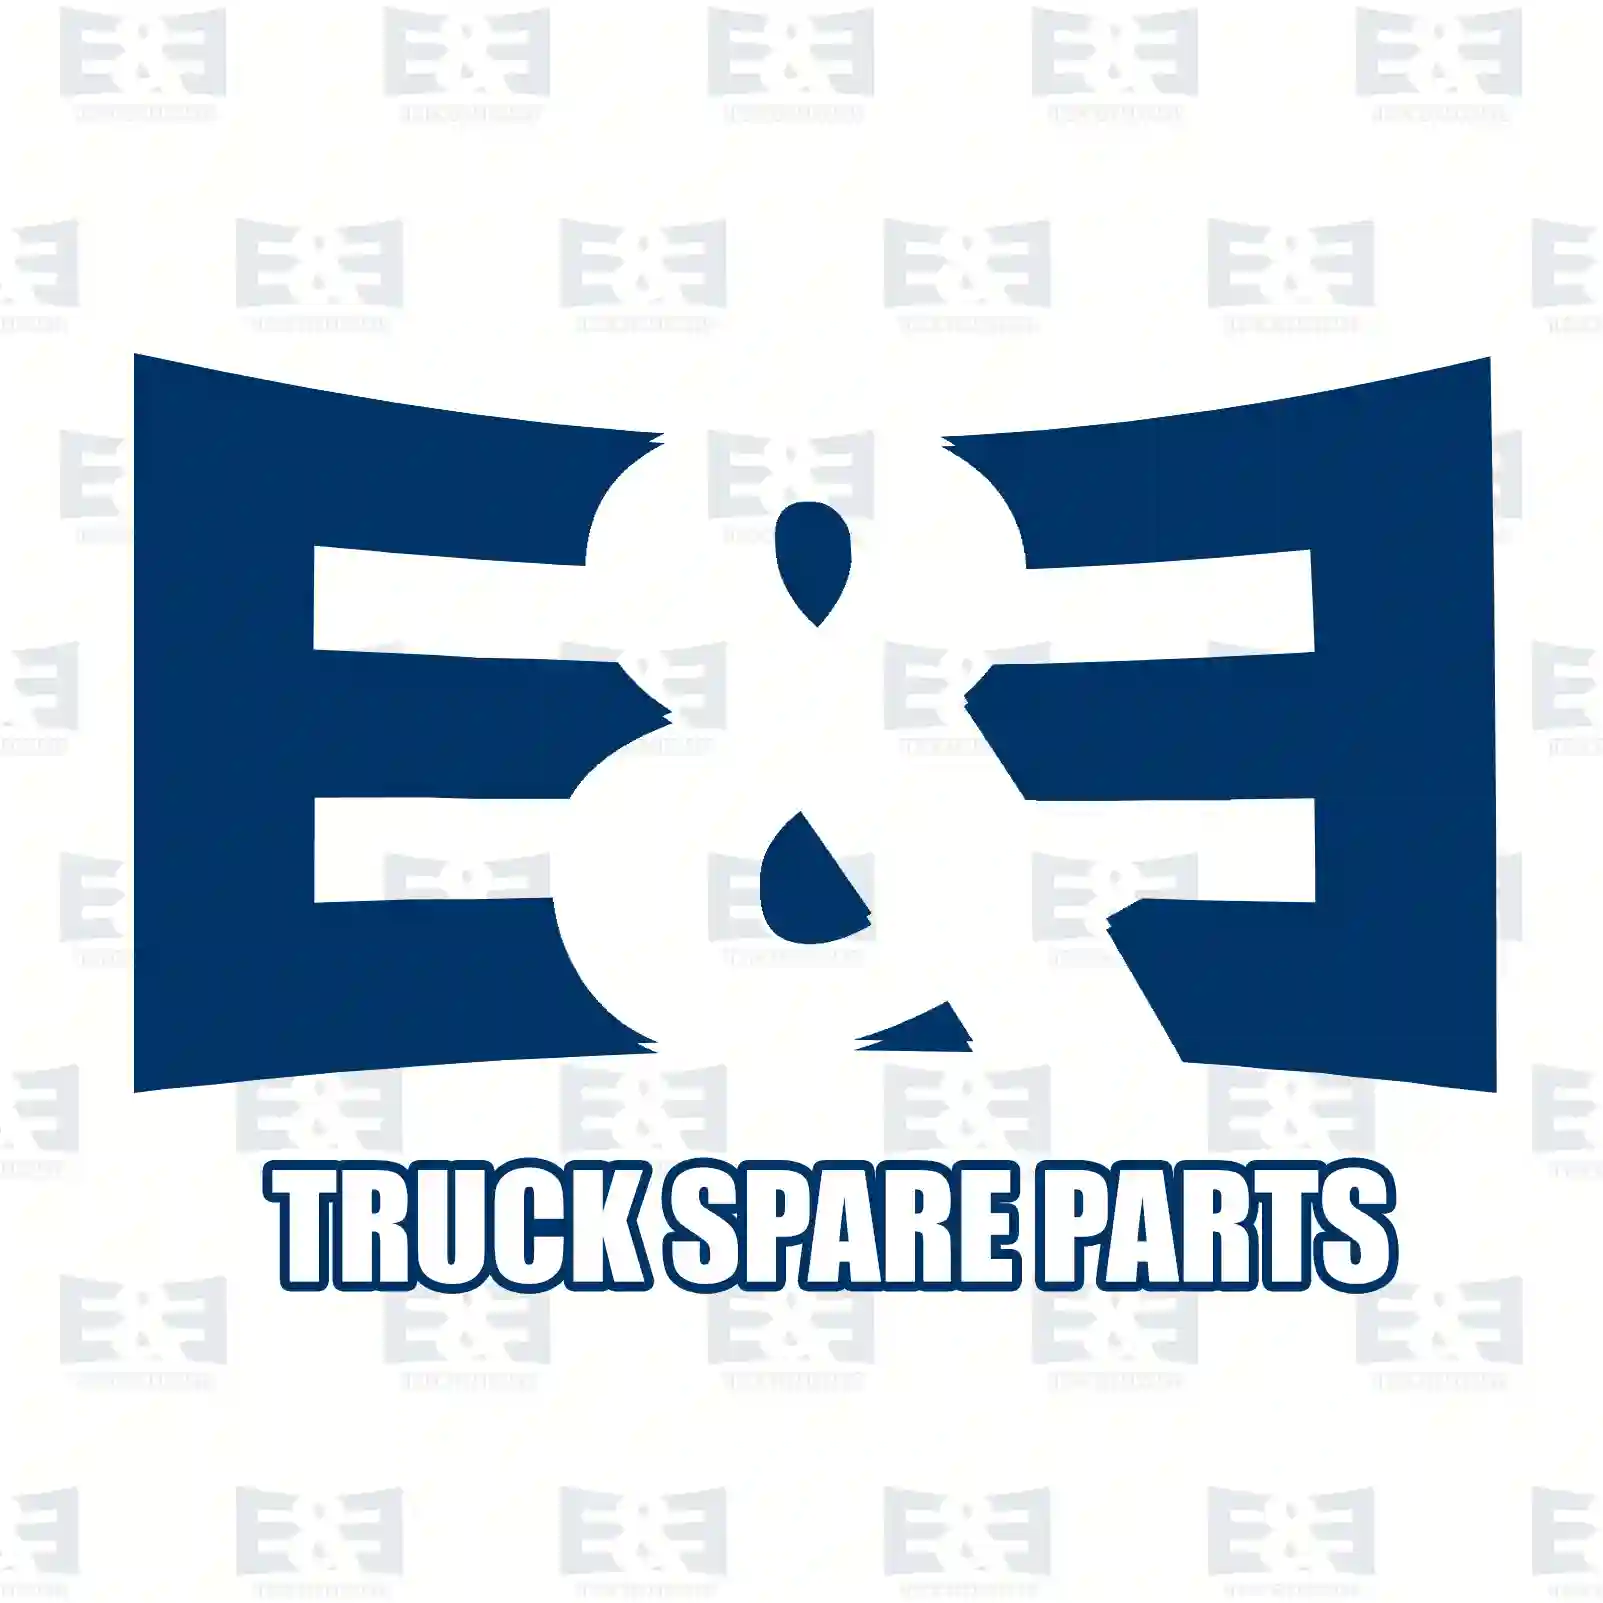 Light switch, 2E2299302, 0005456704, ZG20100-0008 ||  2E2299302 E&E Truck Spare Parts | Truck Spare Parts, Auotomotive Spare Parts Light switch, 2E2299302, 0005456704, ZG20100-0008 ||  2E2299302 E&E Truck Spare Parts | Truck Spare Parts, Auotomotive Spare Parts